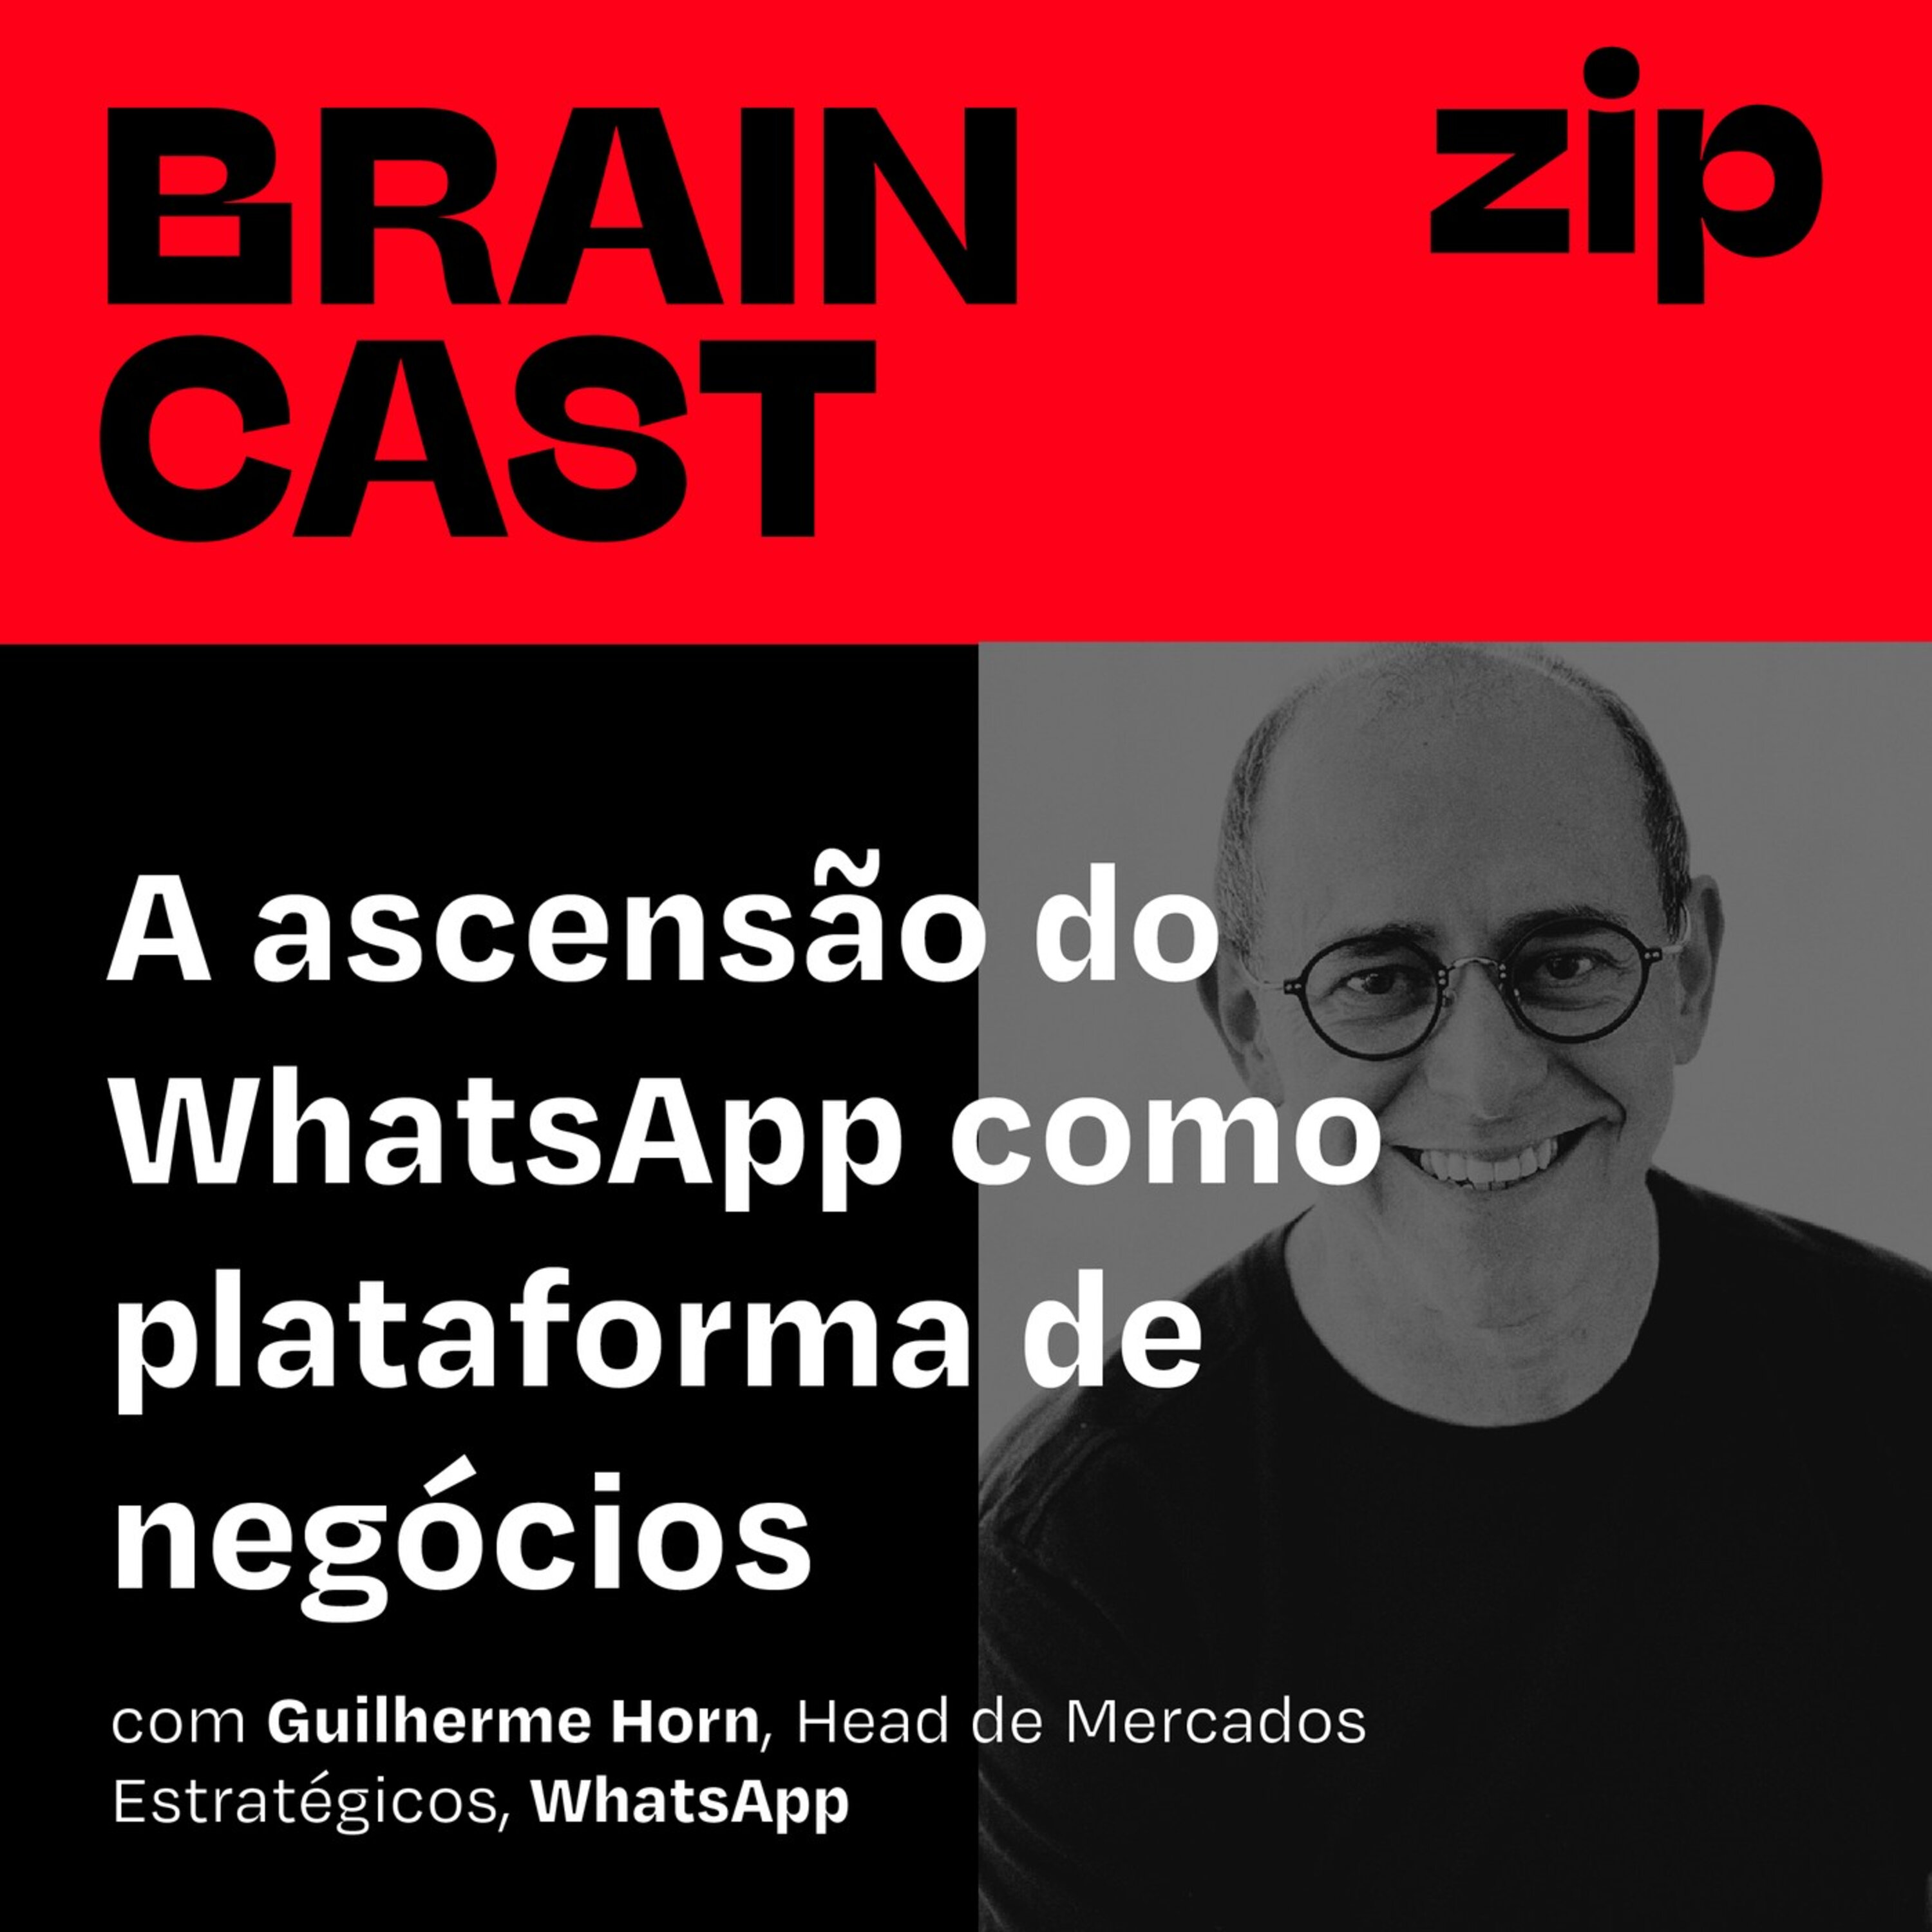 [zip] A ascensão do WhatsApp como plataforma de negócios | com Guilherme Horn, Head de Mercados Estratégicos, WhatsApp